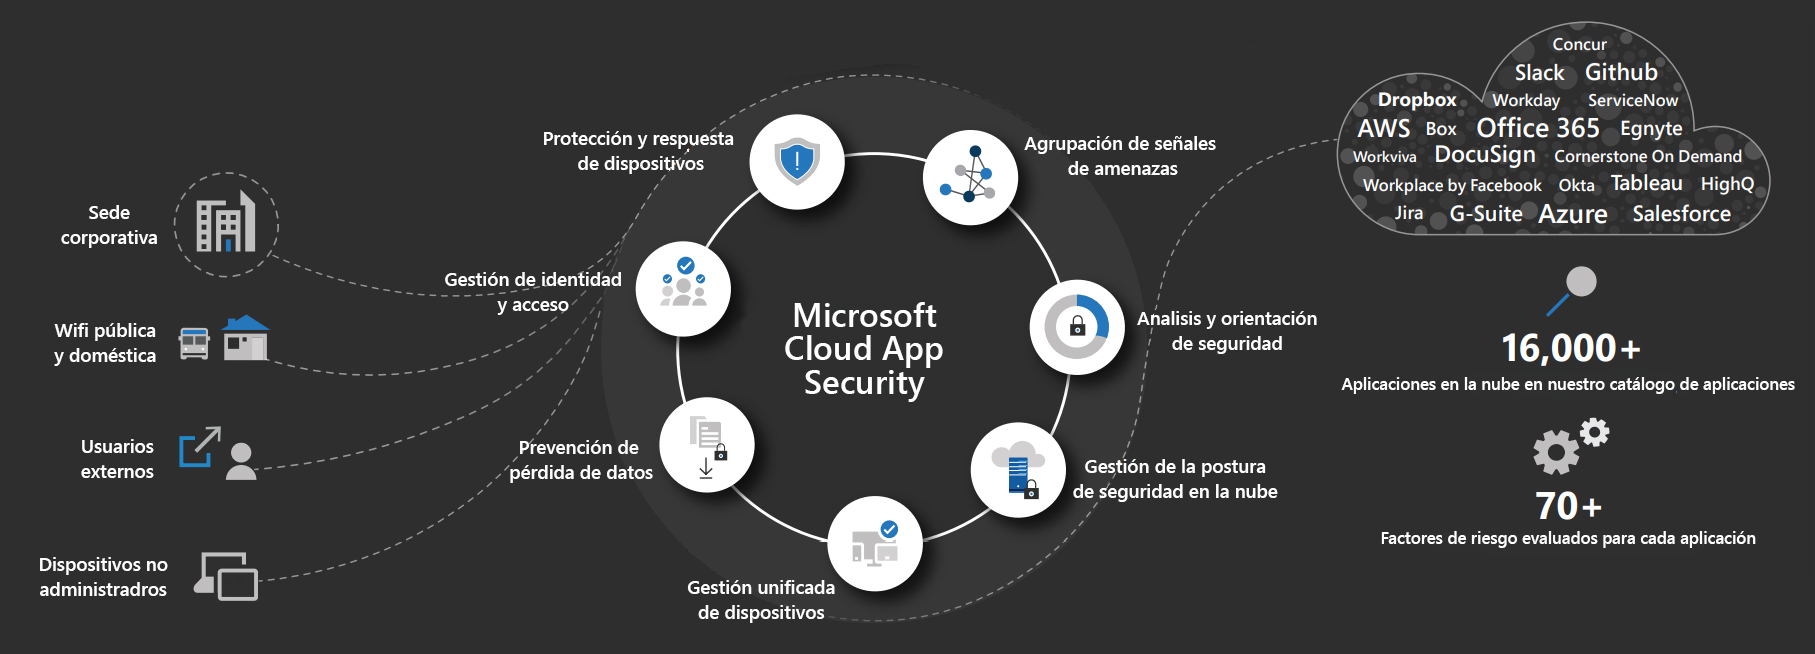 Descubre Microsoft Cloud App Security